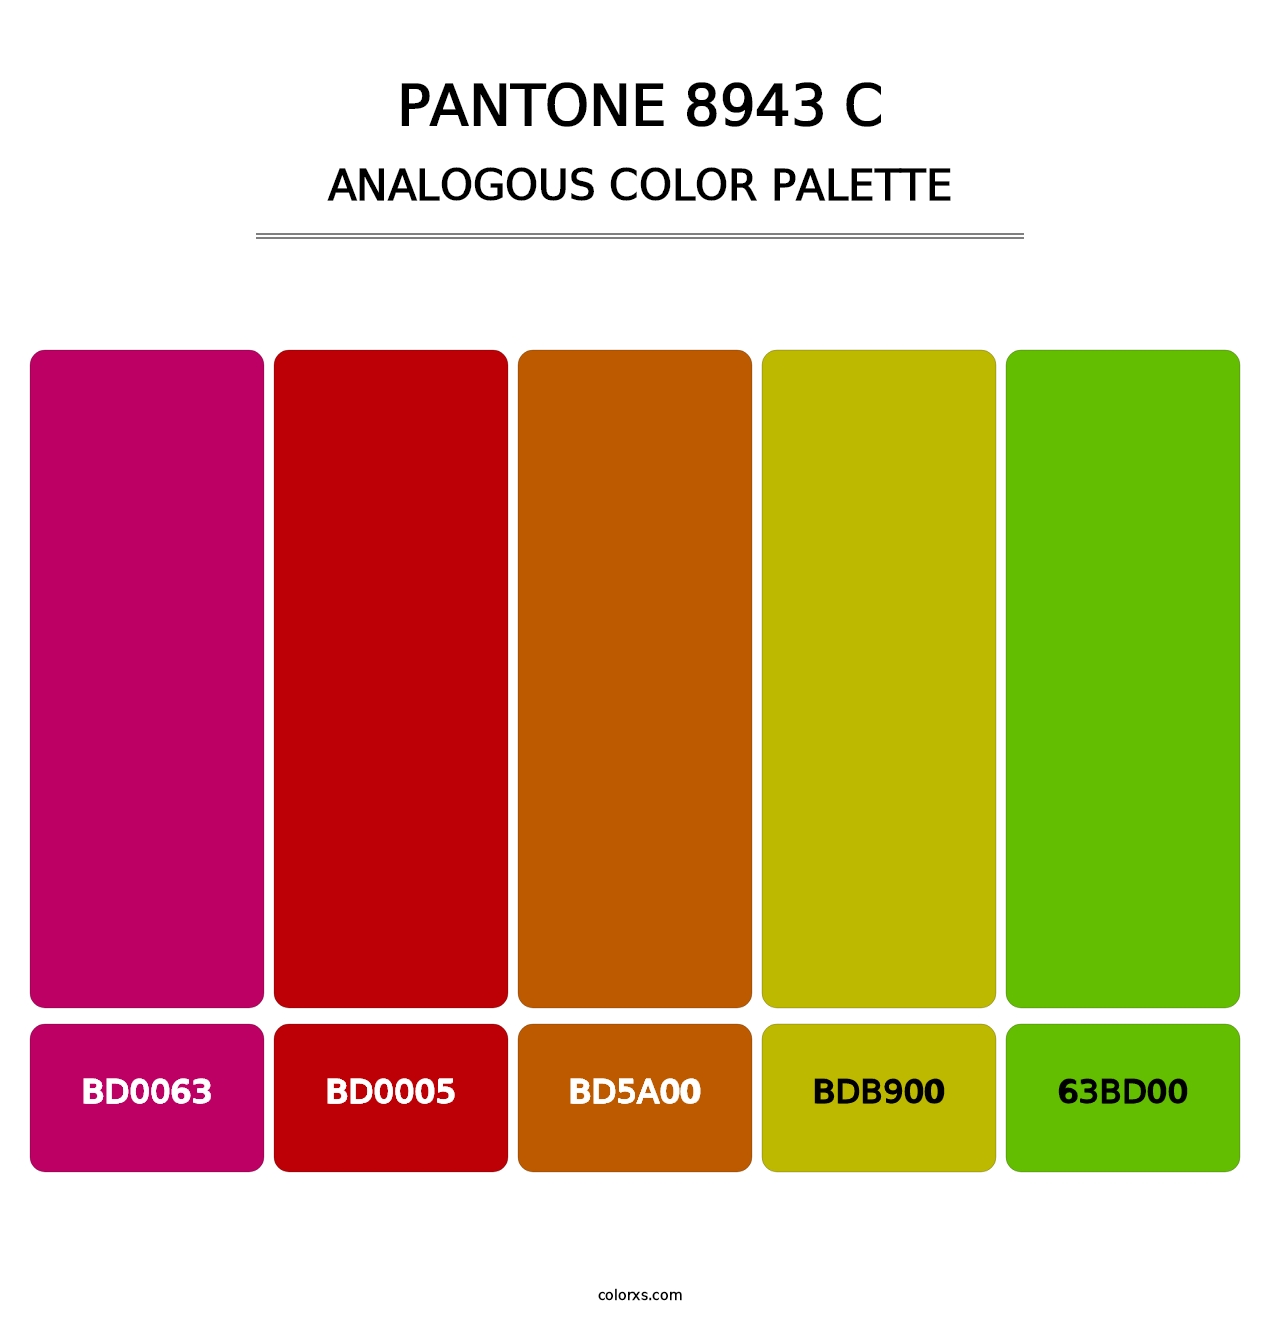 PANTONE 8943 C - Analogous Color Palette